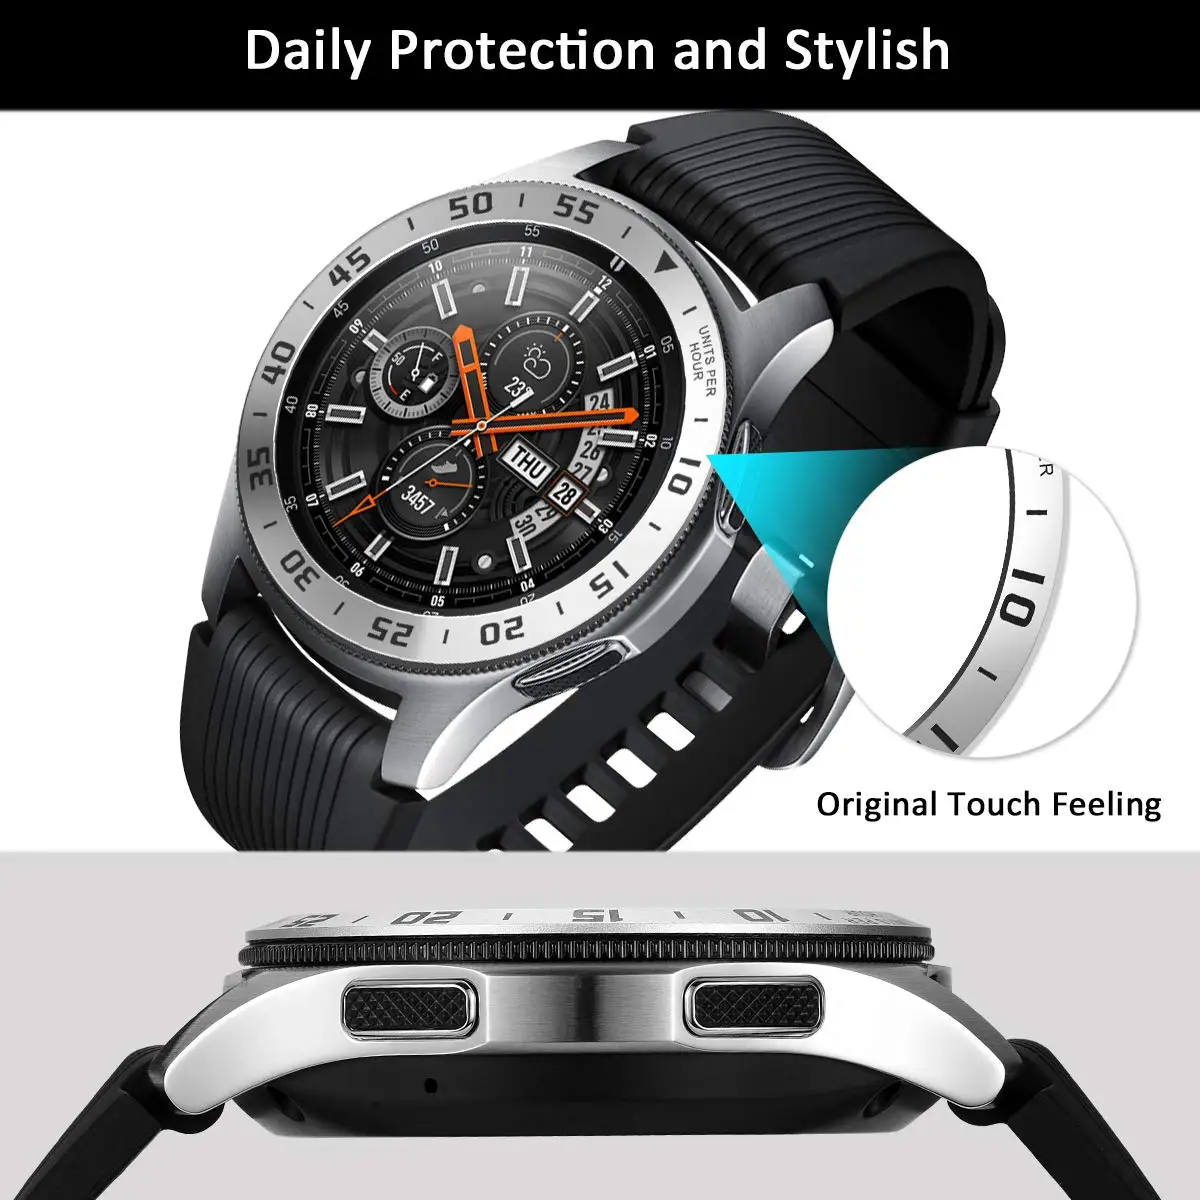 Anneau de lunette pour Samsung Galaxy Watch, 46mm, couvercle adhésif, anti-rayures, protection en acier inoxydable, accessoires pour Samsung Gear S3